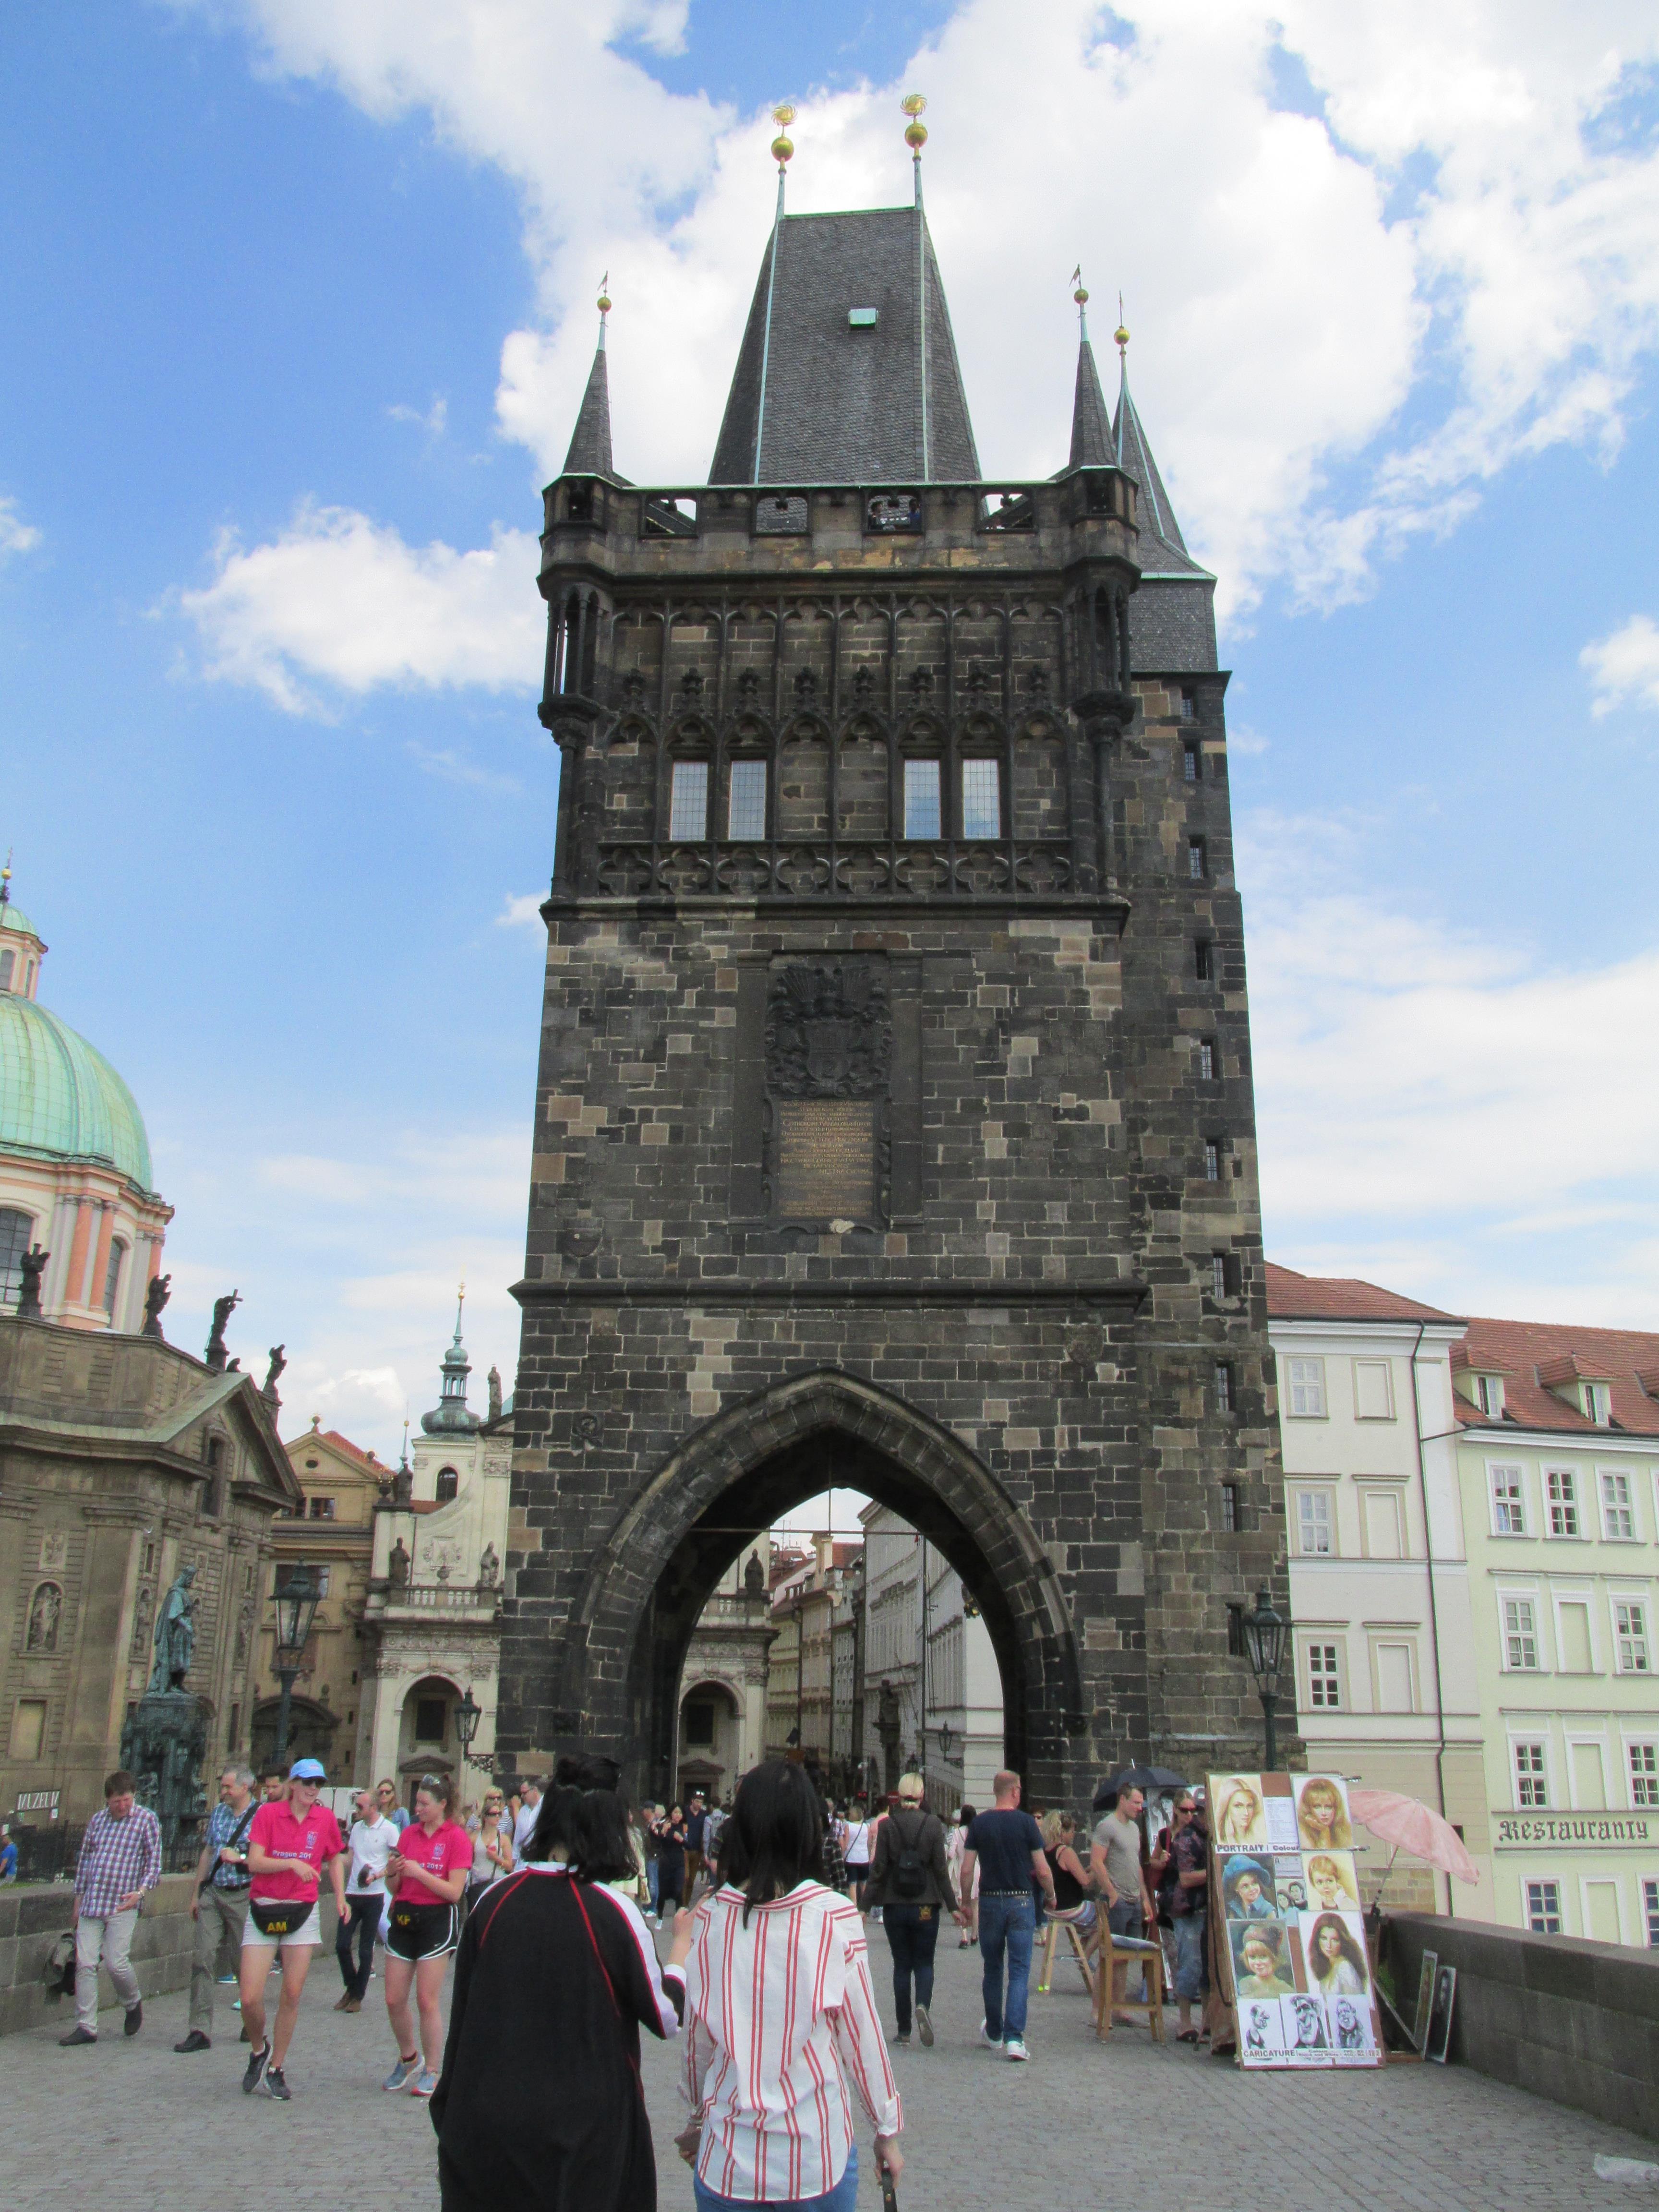 布拉格老城桥塔攻略,布拉格老城桥塔简介图片,门票价格,开放时间 - 无二之旅